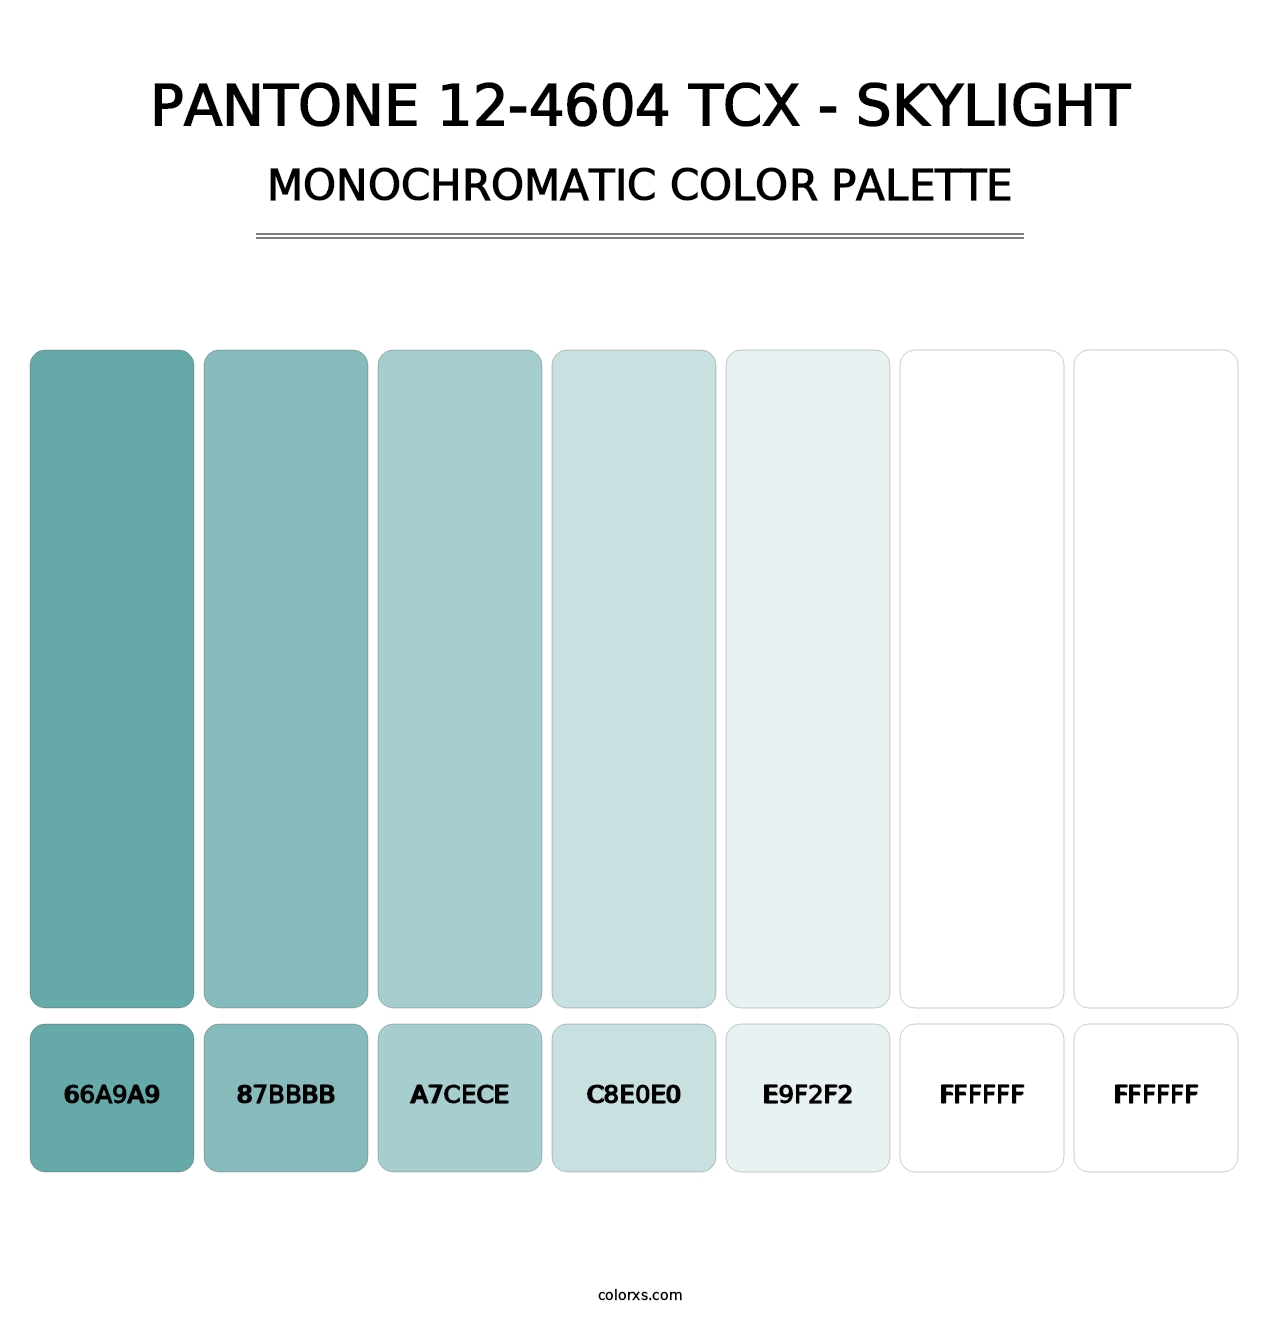 PANTONE 12-4604 TCX - Skylight - Monochromatic Color Palette